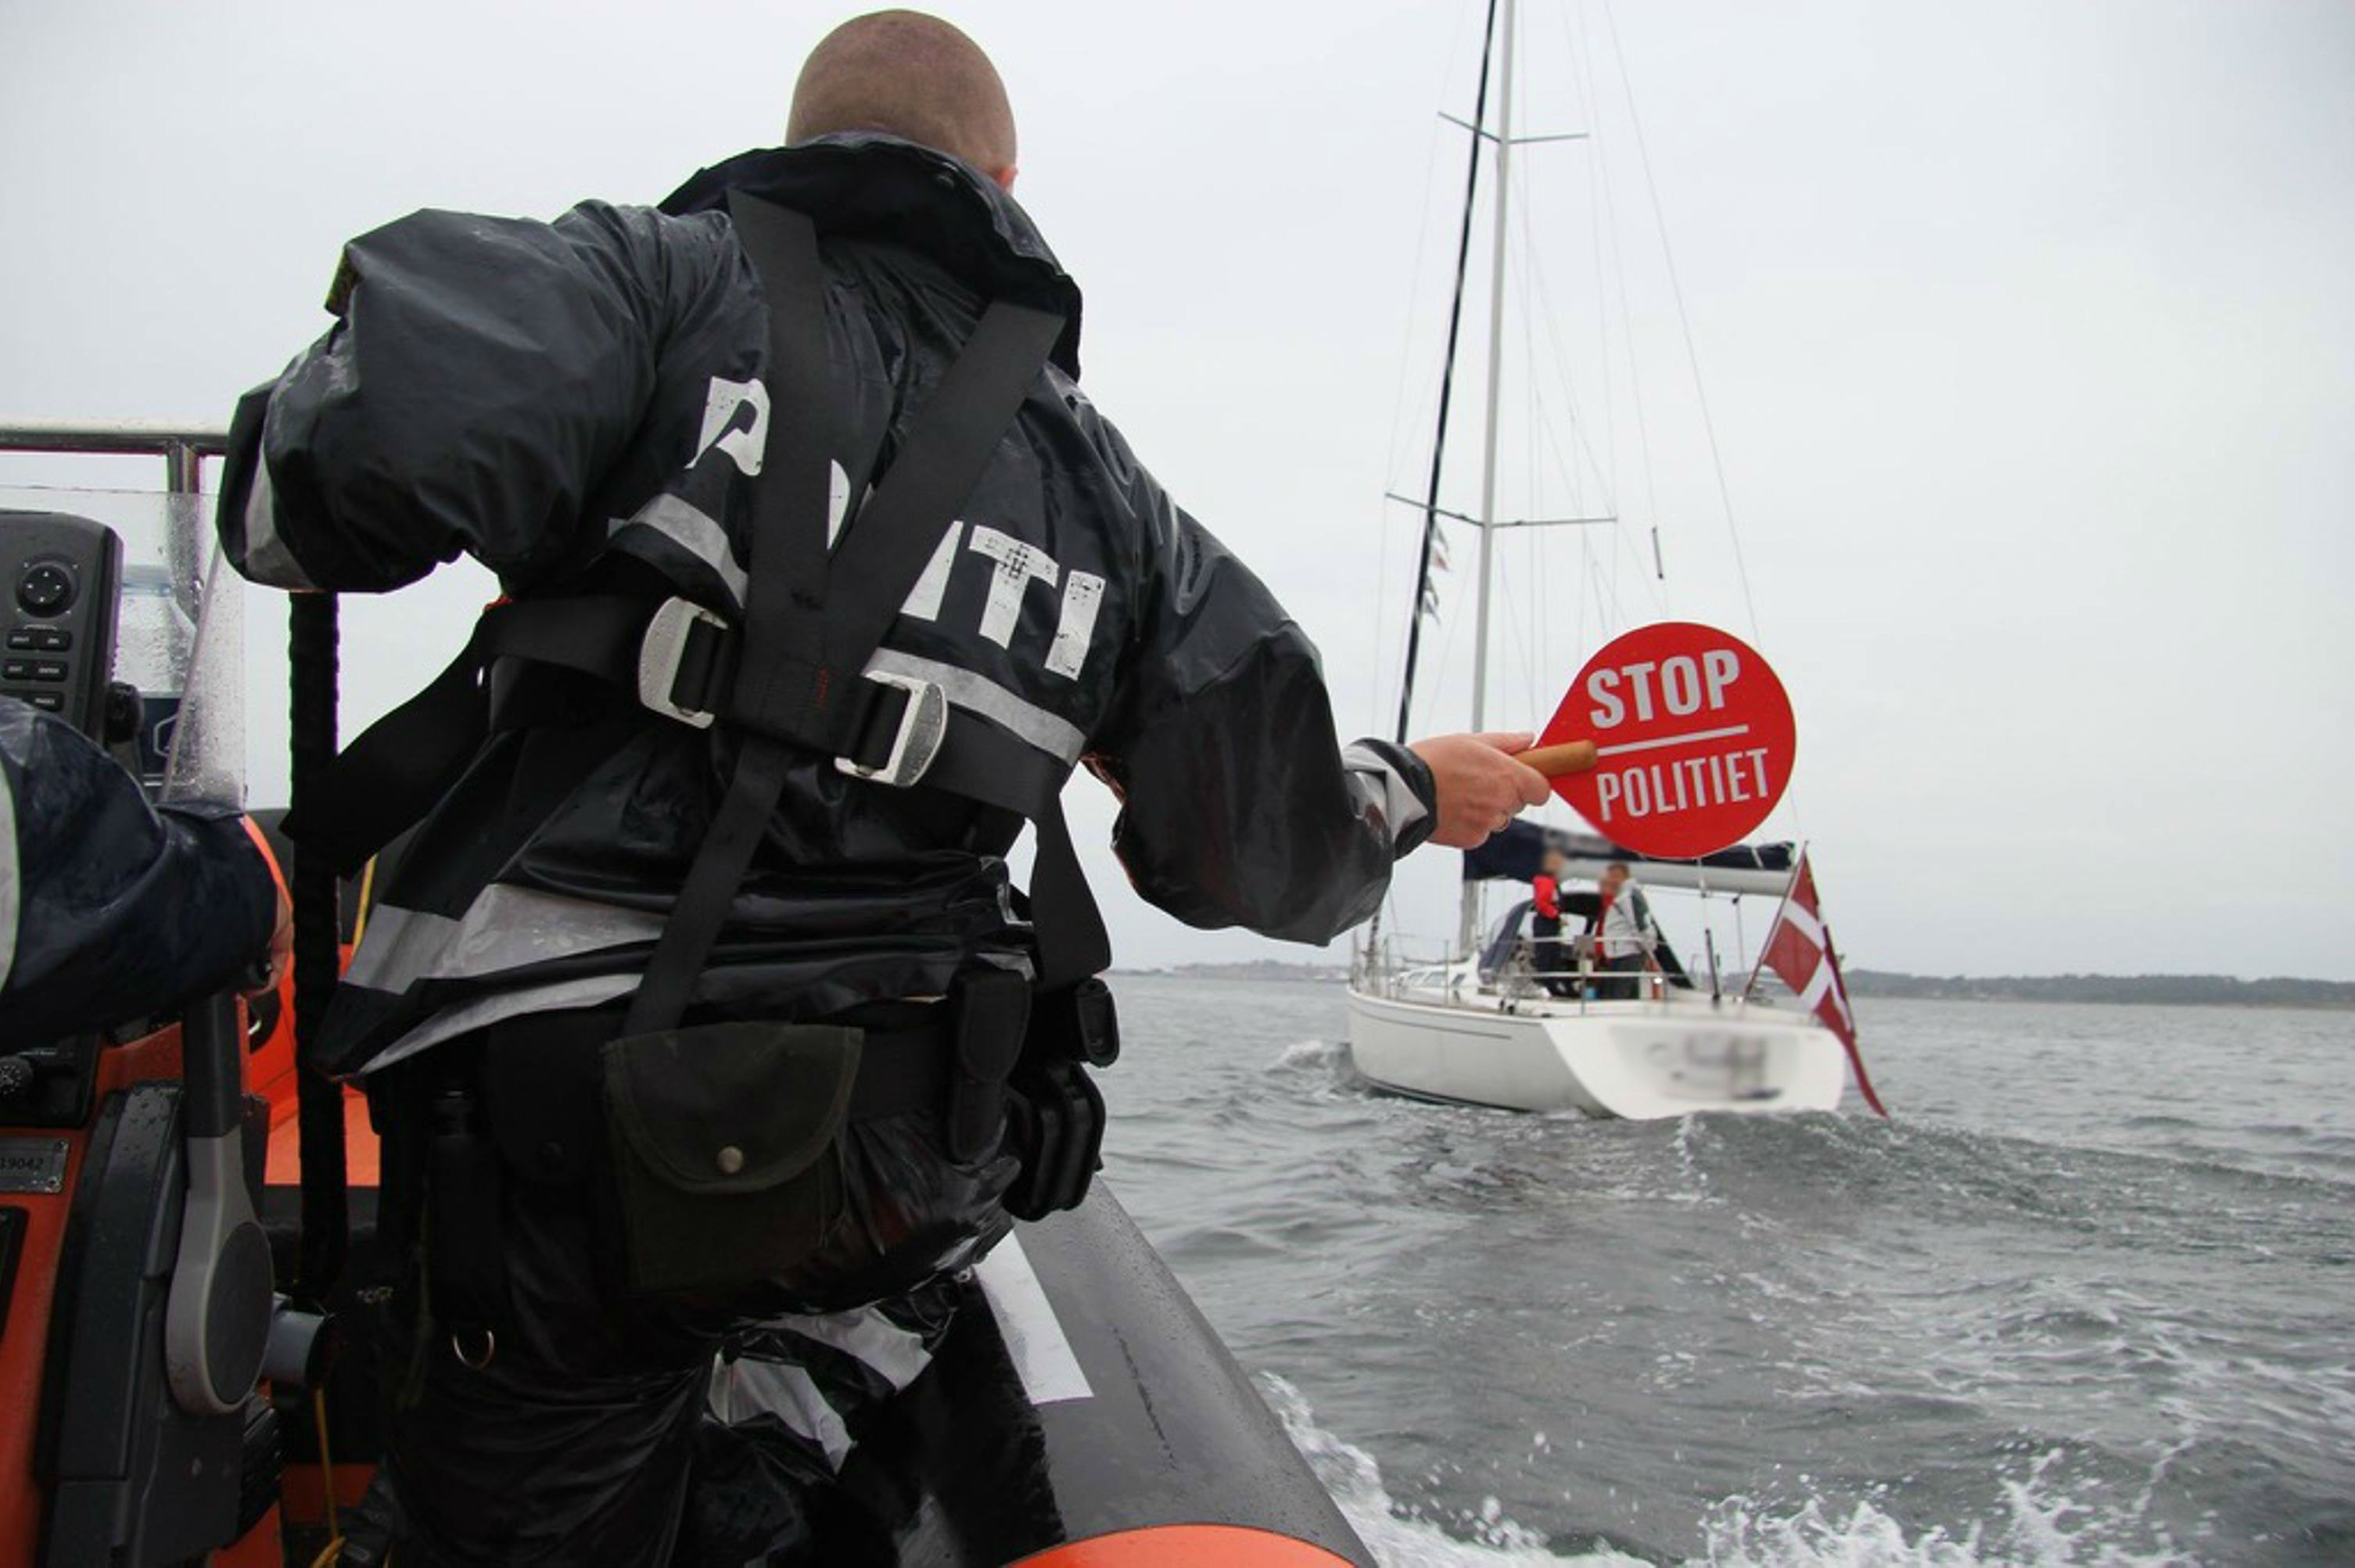 Politiet patruljerer også på vandet for at fremme sikkerhed og tryghed. Foto: Politi